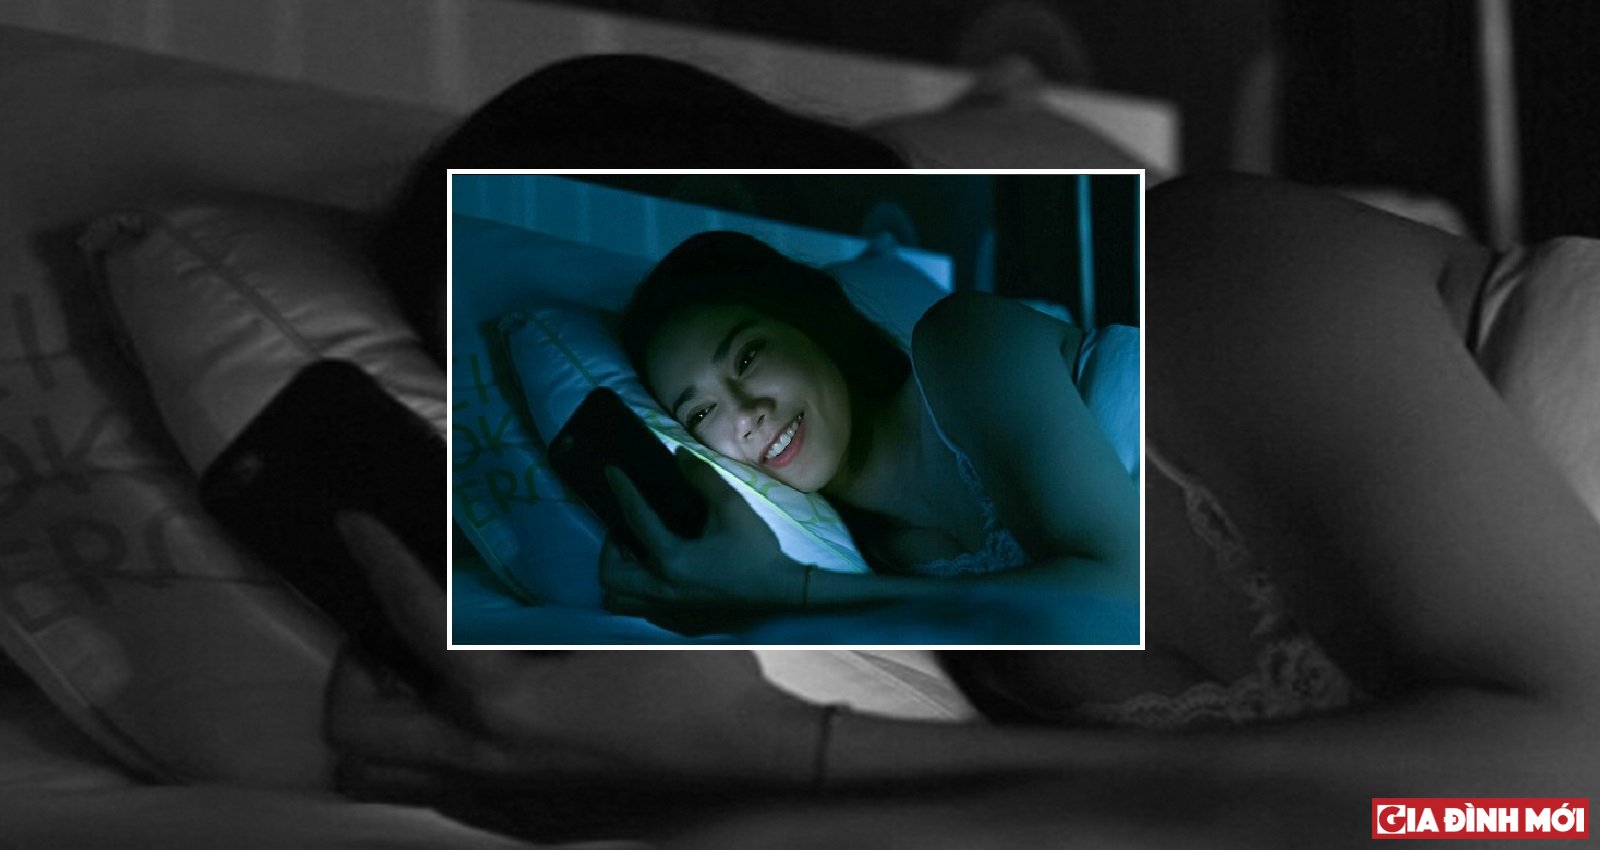 Thói quen sử dụng điện thoại trong bóng tối nhiều người mắc nhưng có thể gây hại kinh khủng cho thị lực